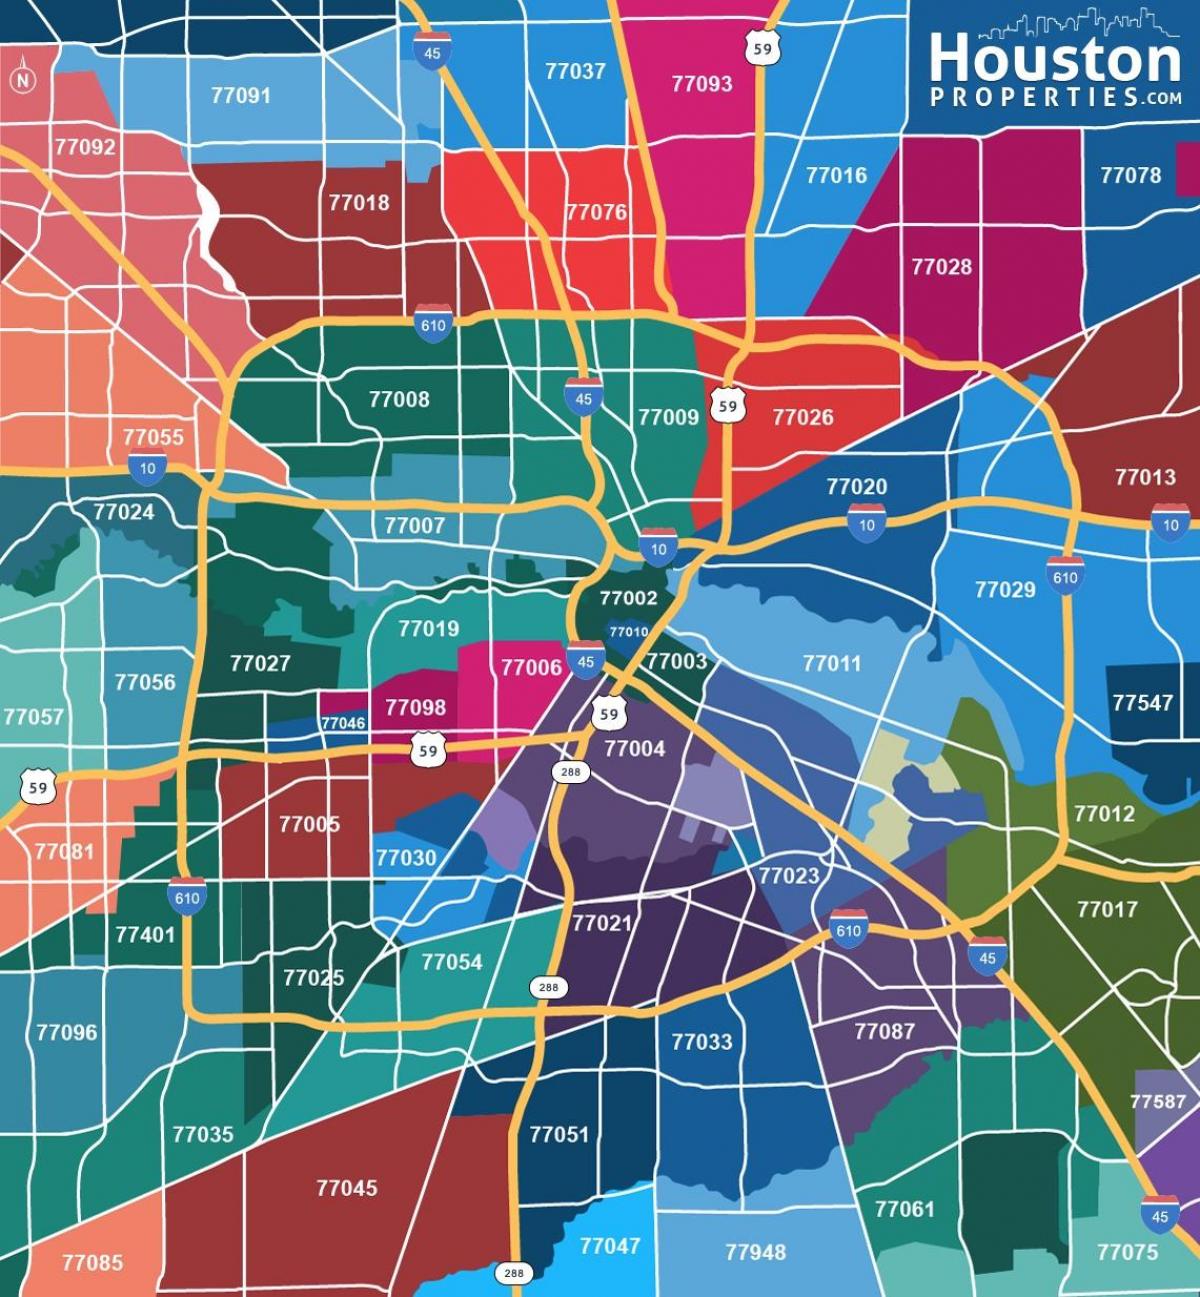 Houston posta kodu haritası